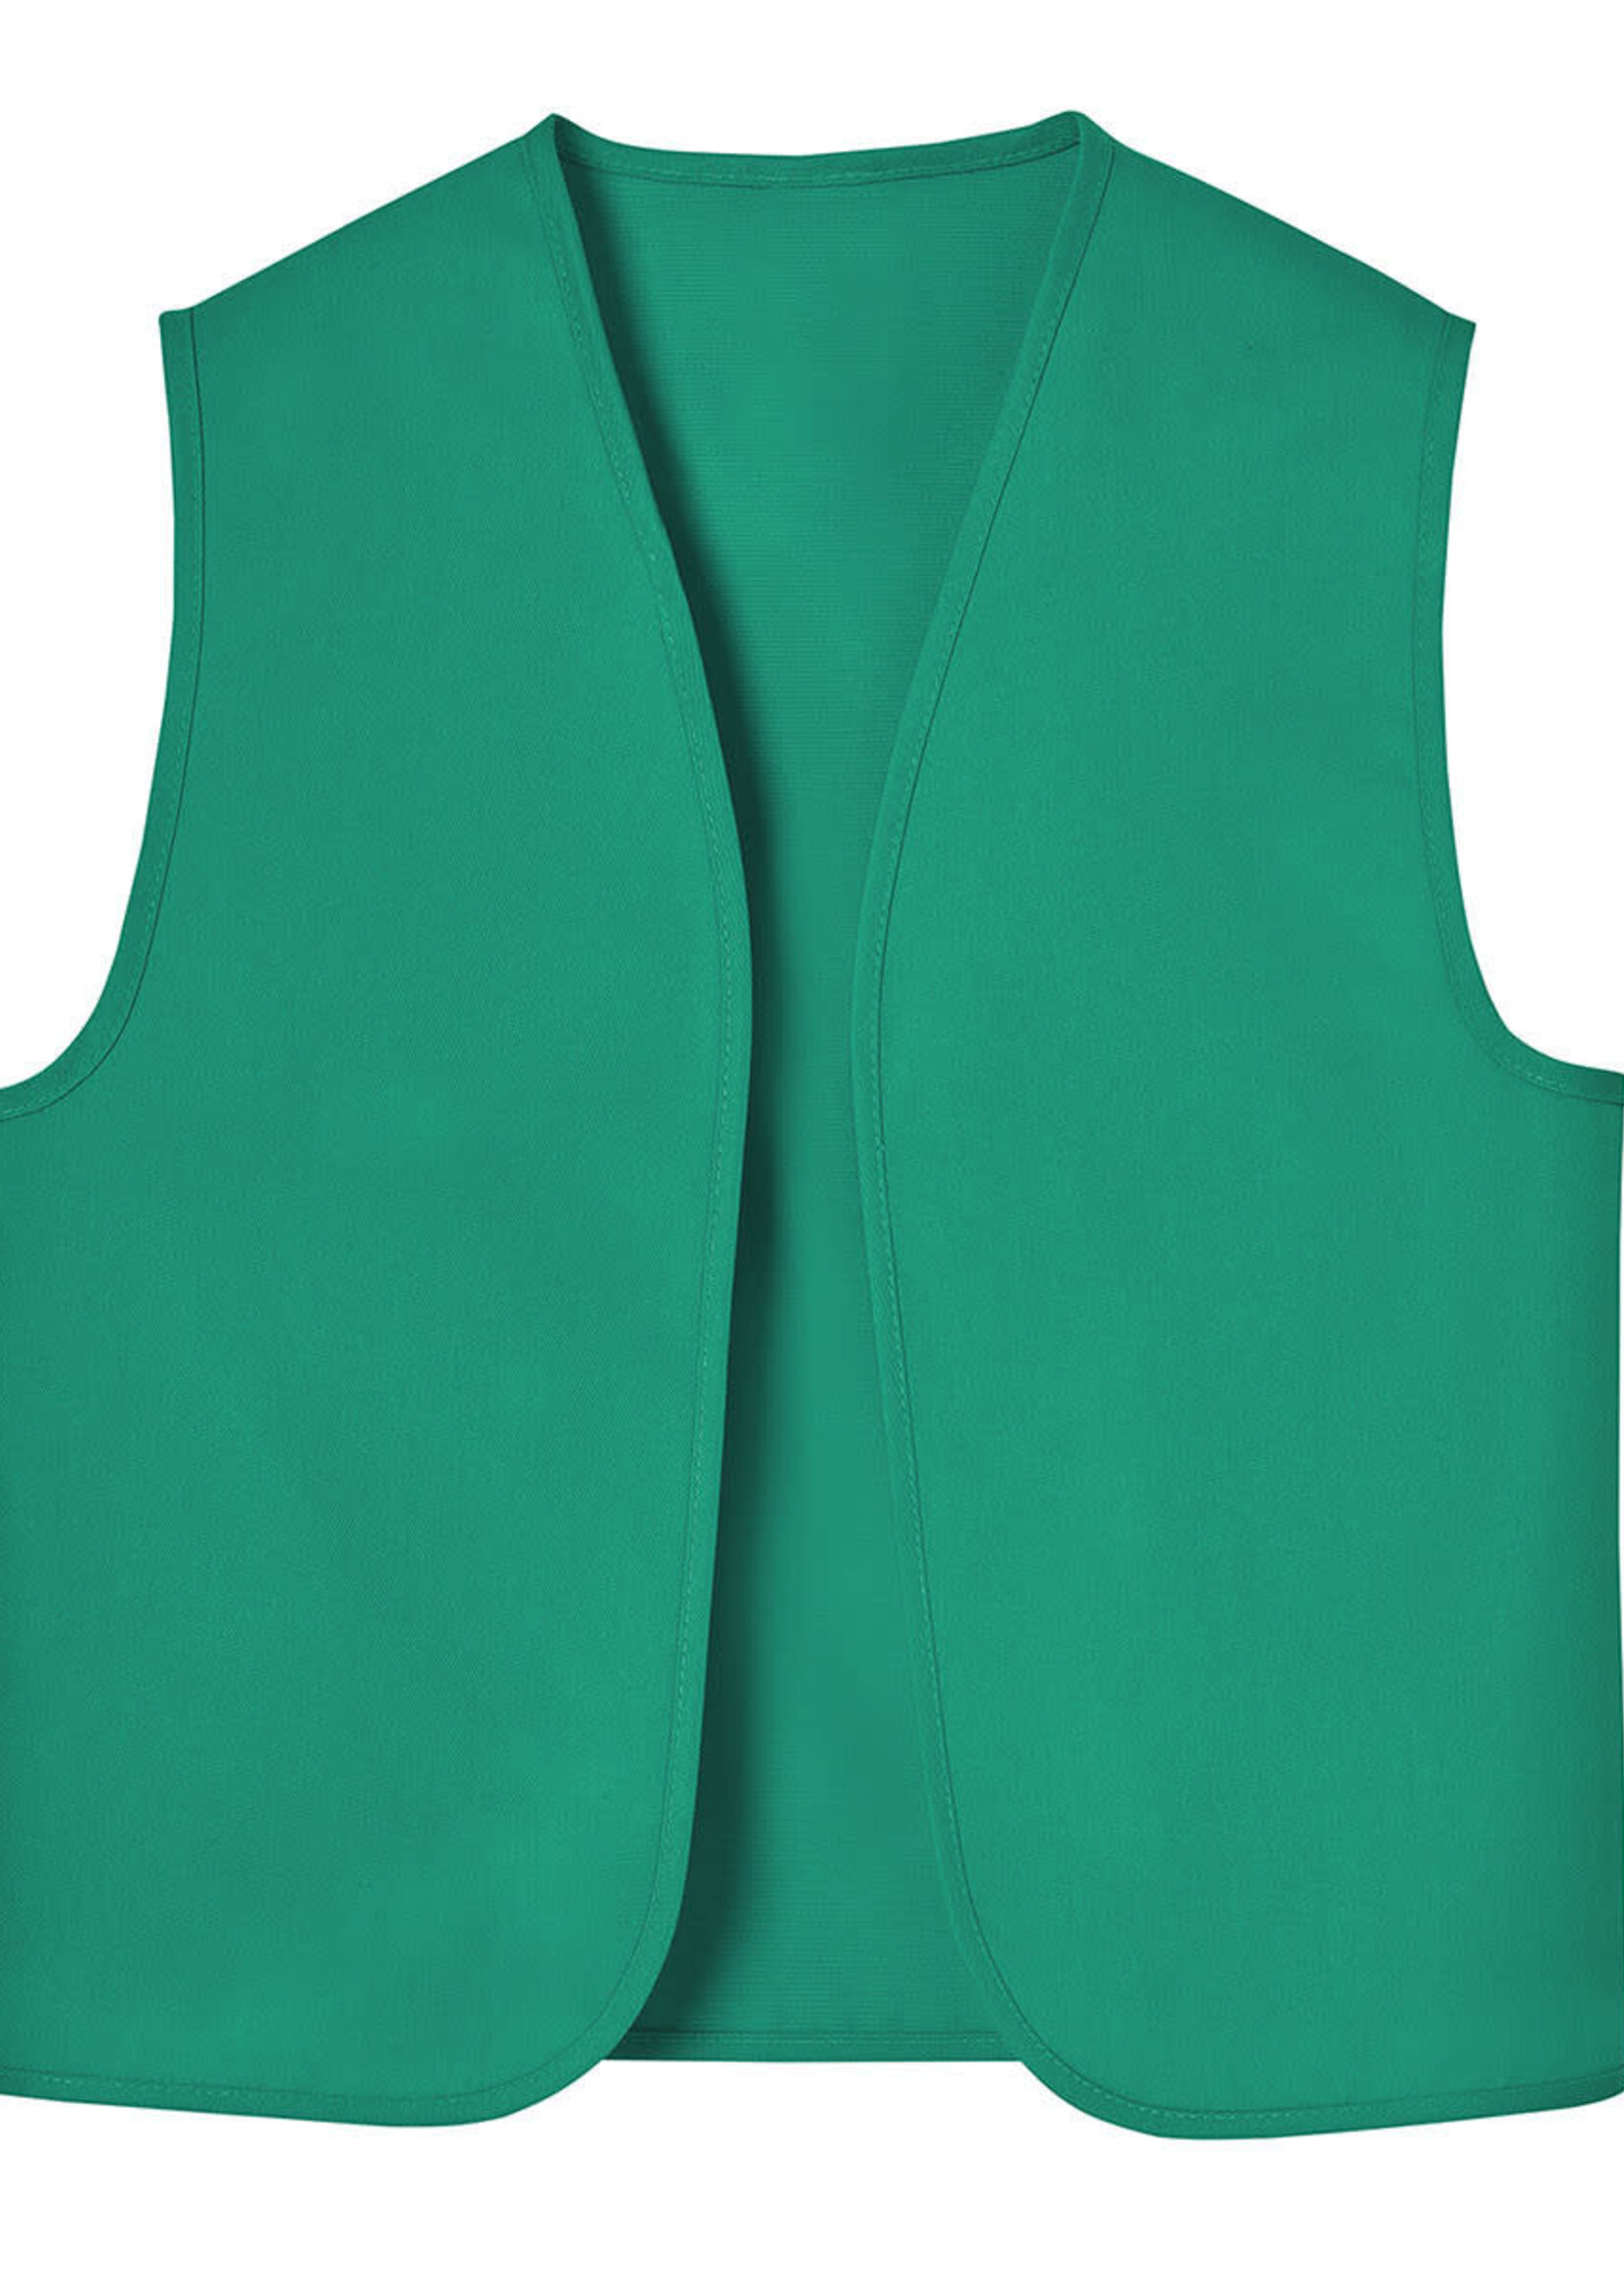 Junior Vest Size Medium (size 10-12)